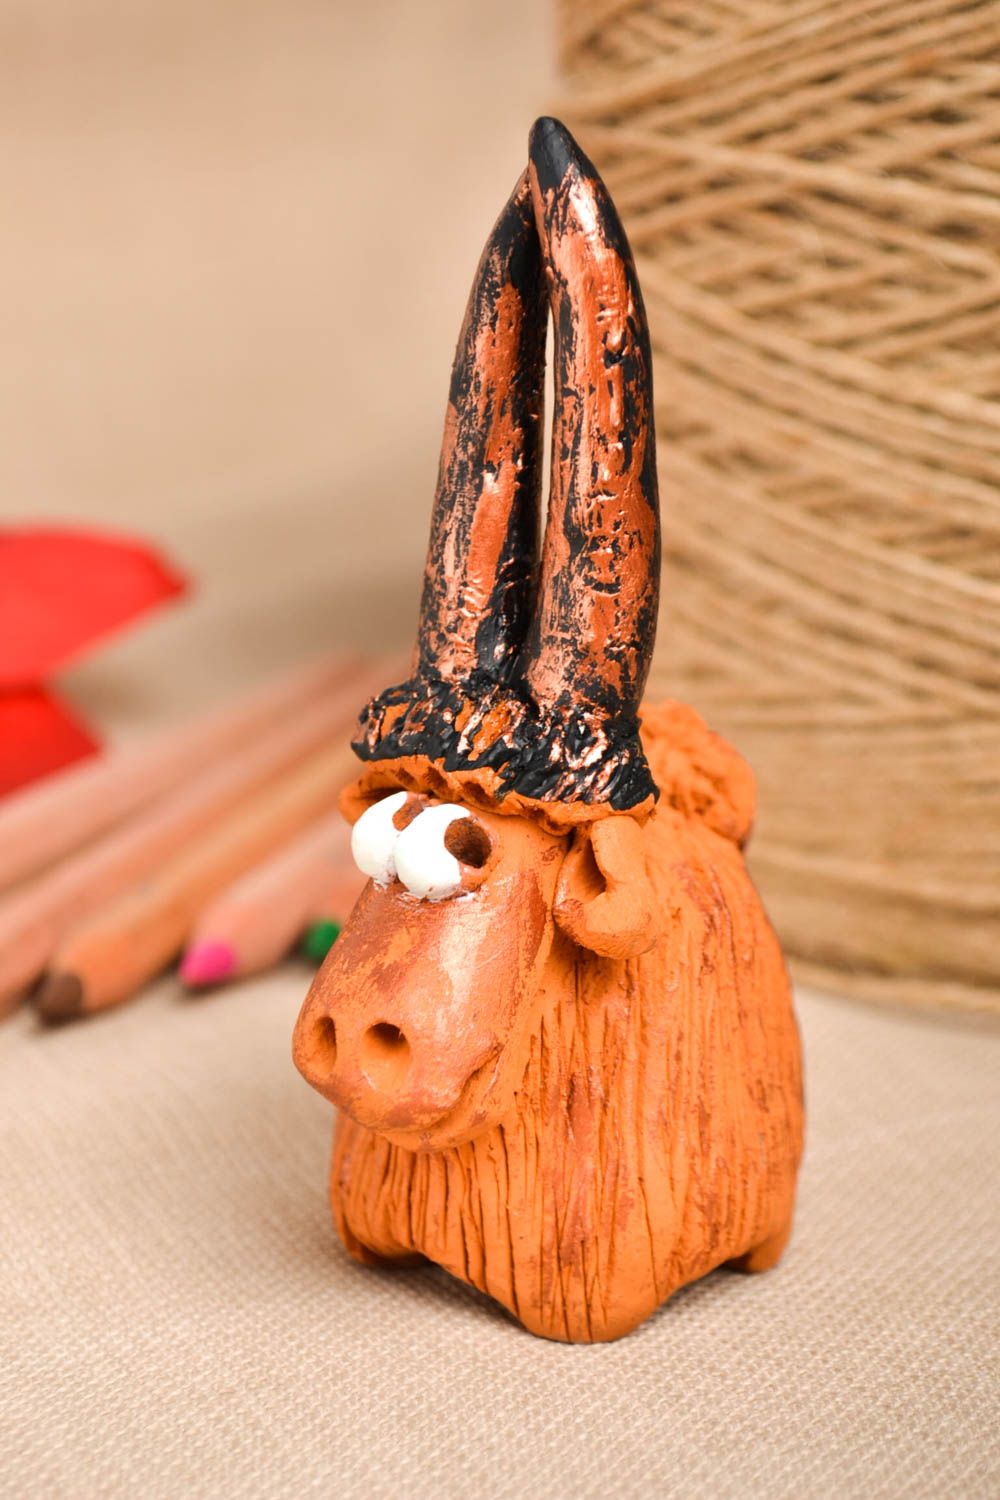 Статуэтка ручной работы глиняная статуэтка фигурка животного расписная Коза фото 1